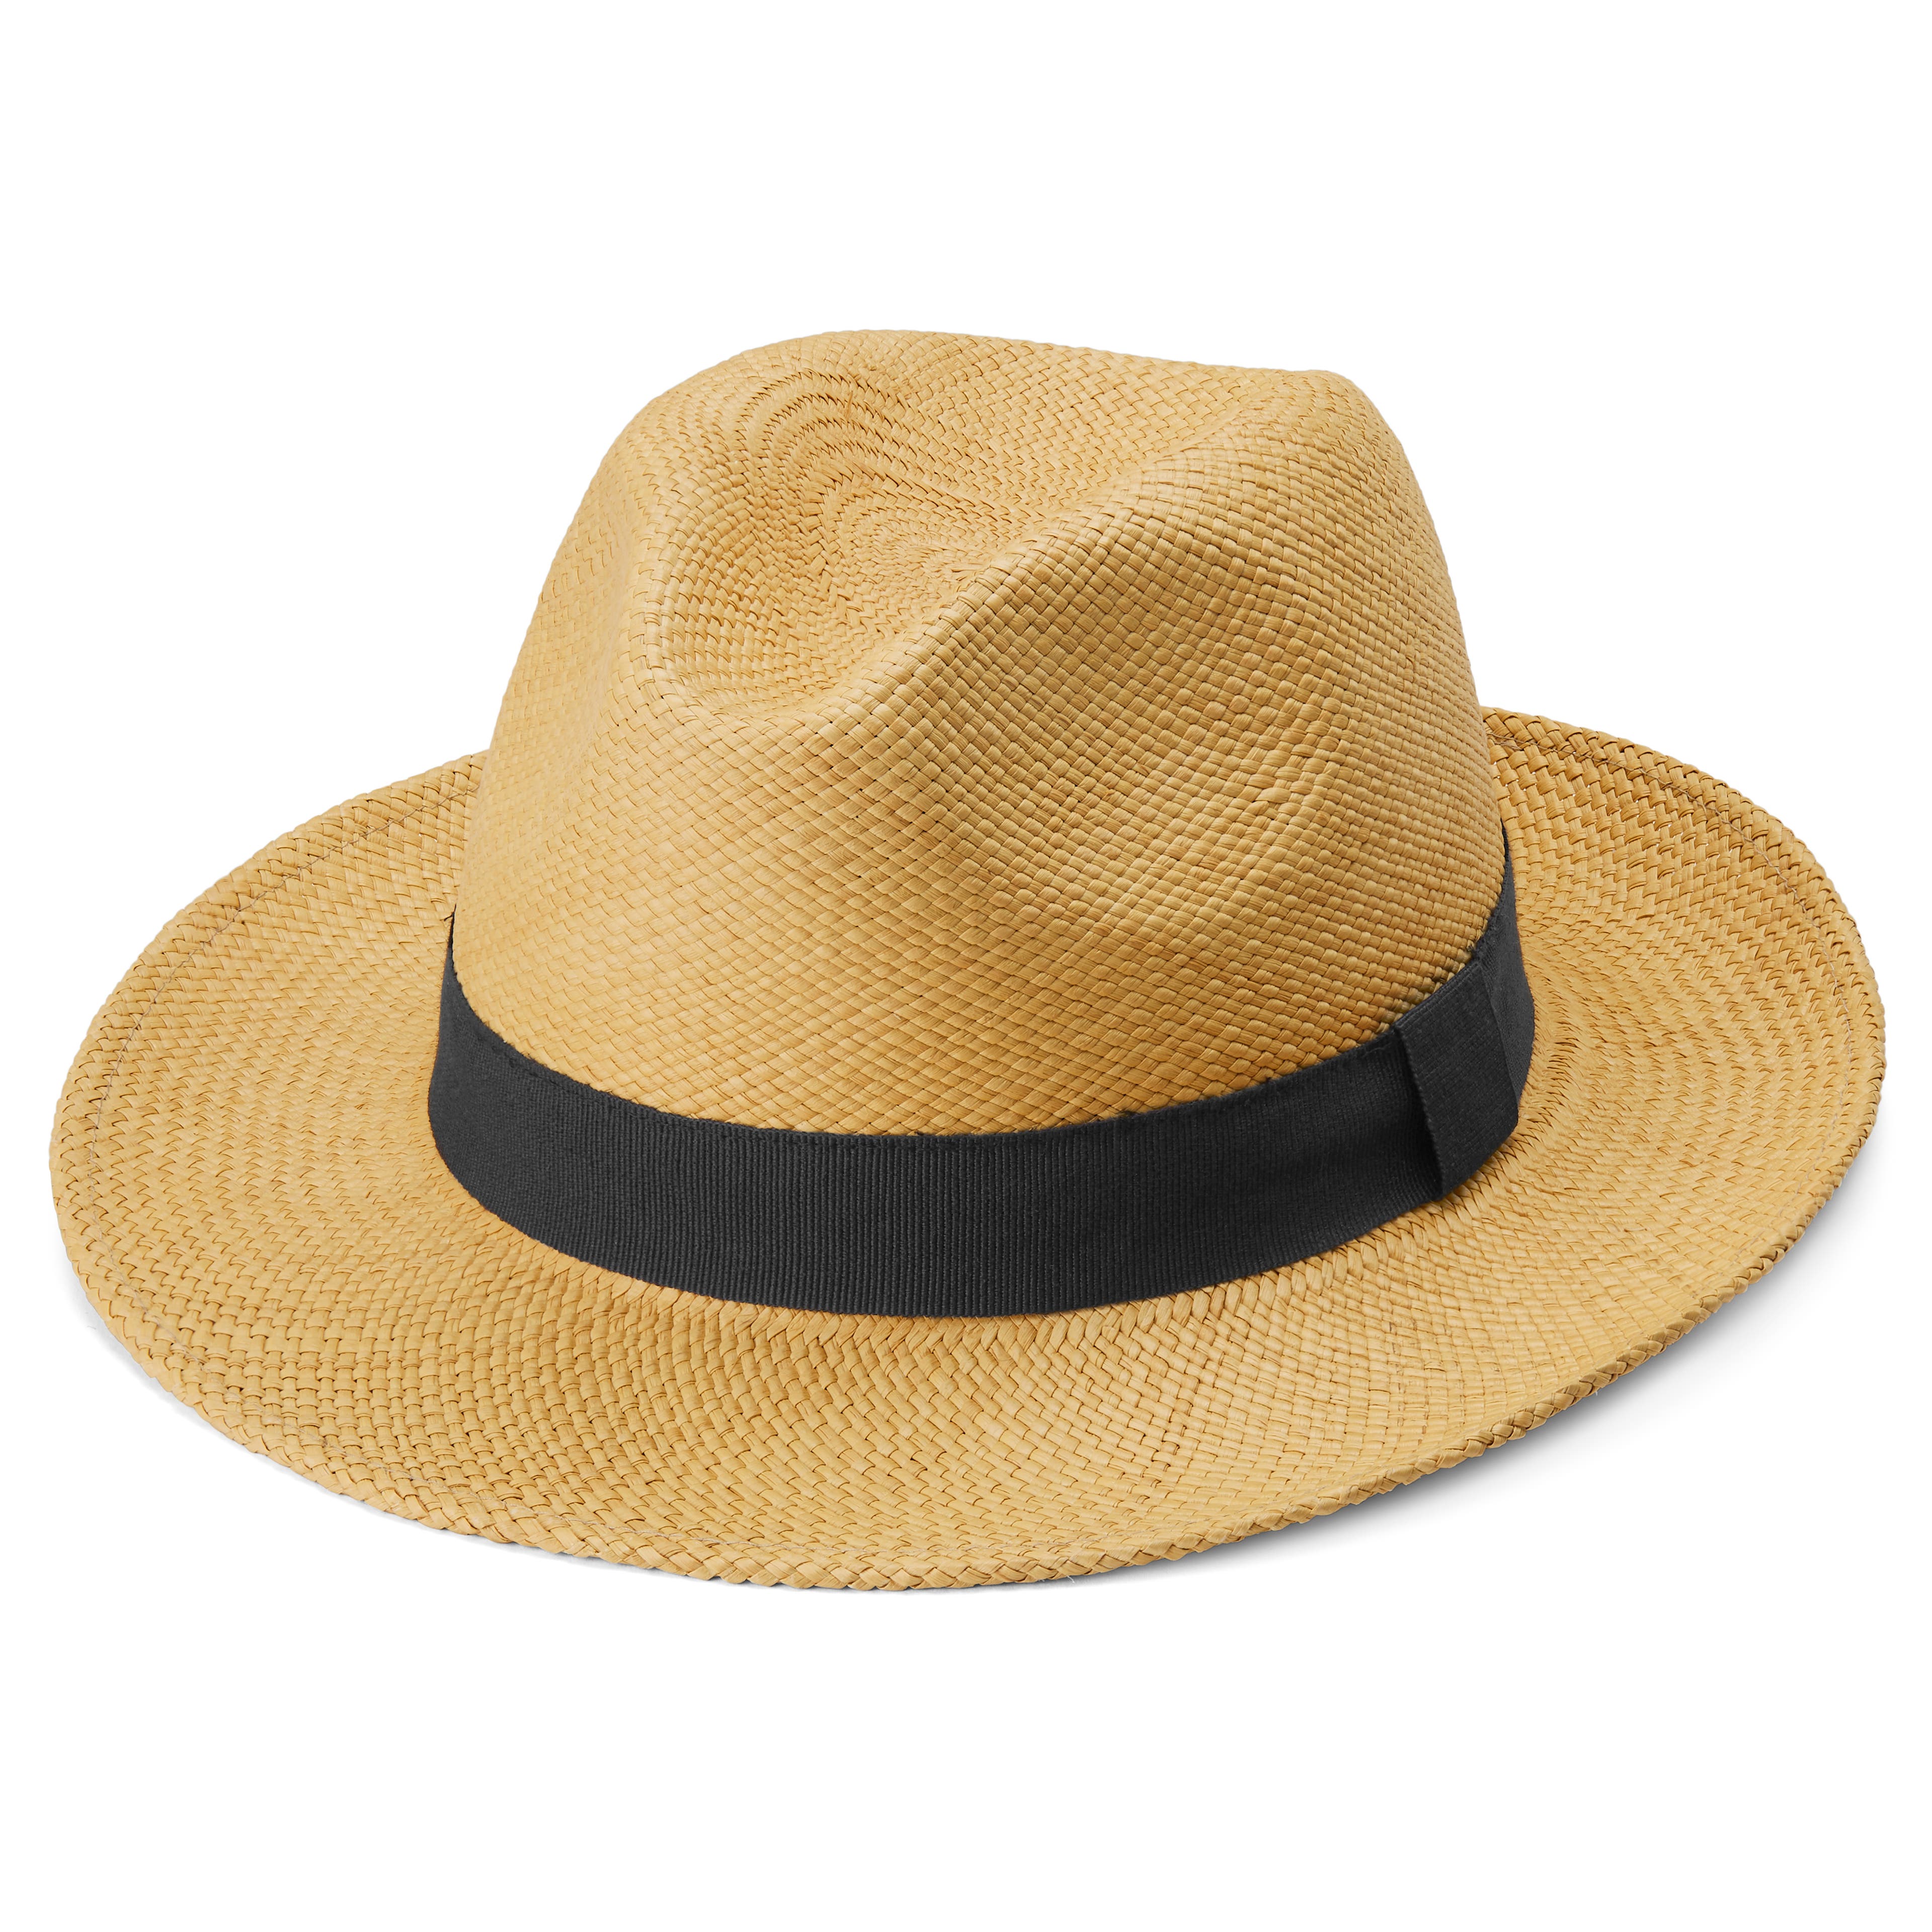 Men's Hats  191 Styles for men in stock